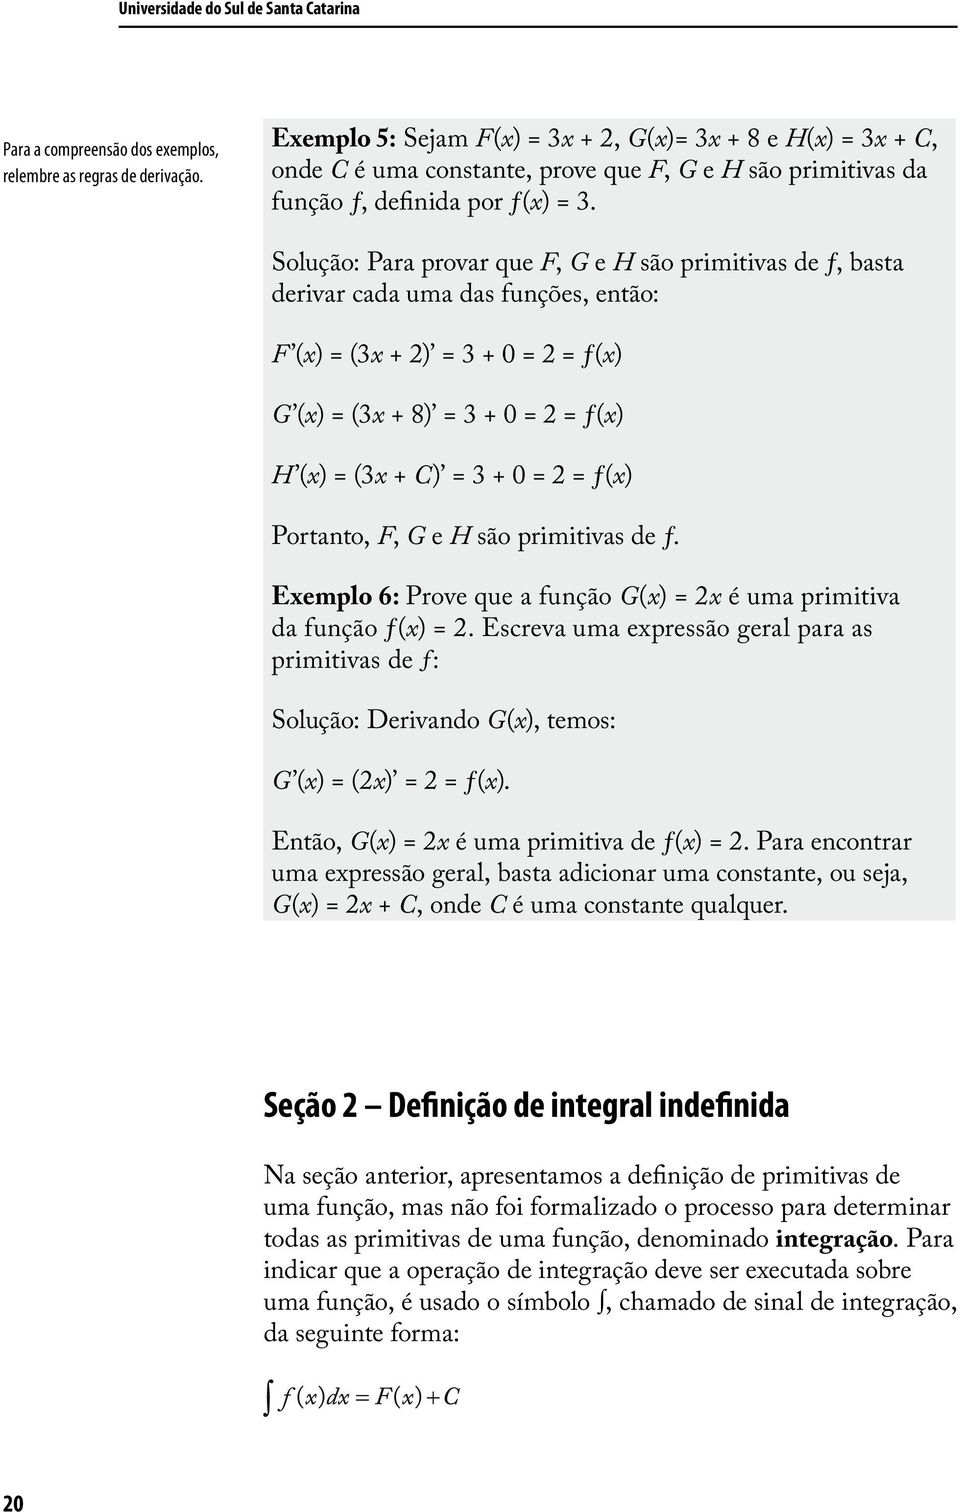 = (3x + 8) = 3 + 0 = 2 = ƒ(x) H (x) = (3x + C) = 3 + 0 = 2 = ƒ(x) Portanto, F, G e H são primitivas de ƒ Exemplo 6: Prove que a função G(x) = 2x é uma primitiva da função ƒ(x) = 2 Escreva uma